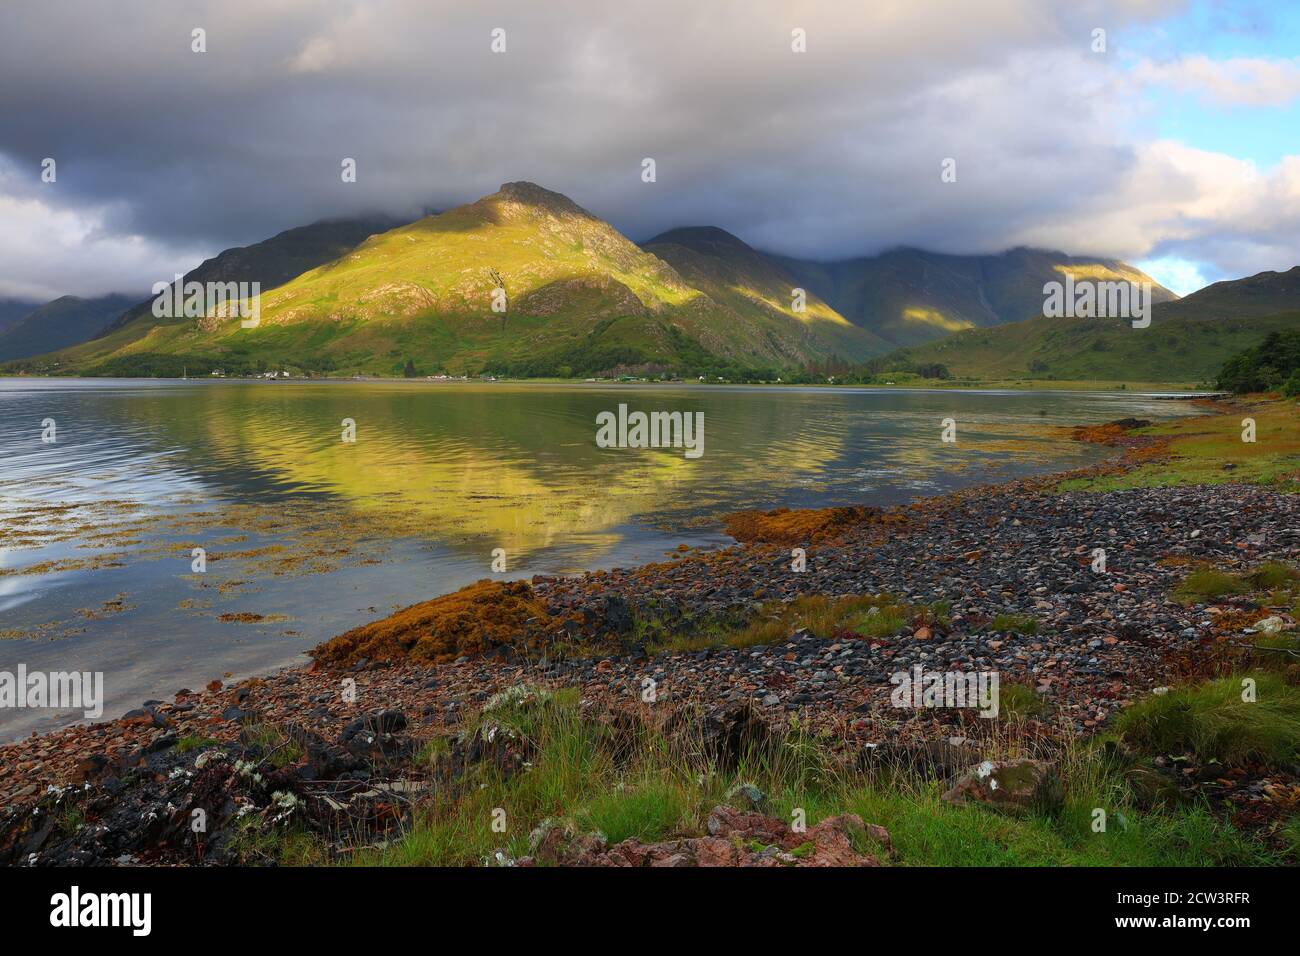 Immagine paesaggistica delle cinque Sorelle della catena montuosa di Kintail dalle rive di Loch Duich, Glen Shiel, West Highlands, Scozia, Regno Unito. Foto Stock